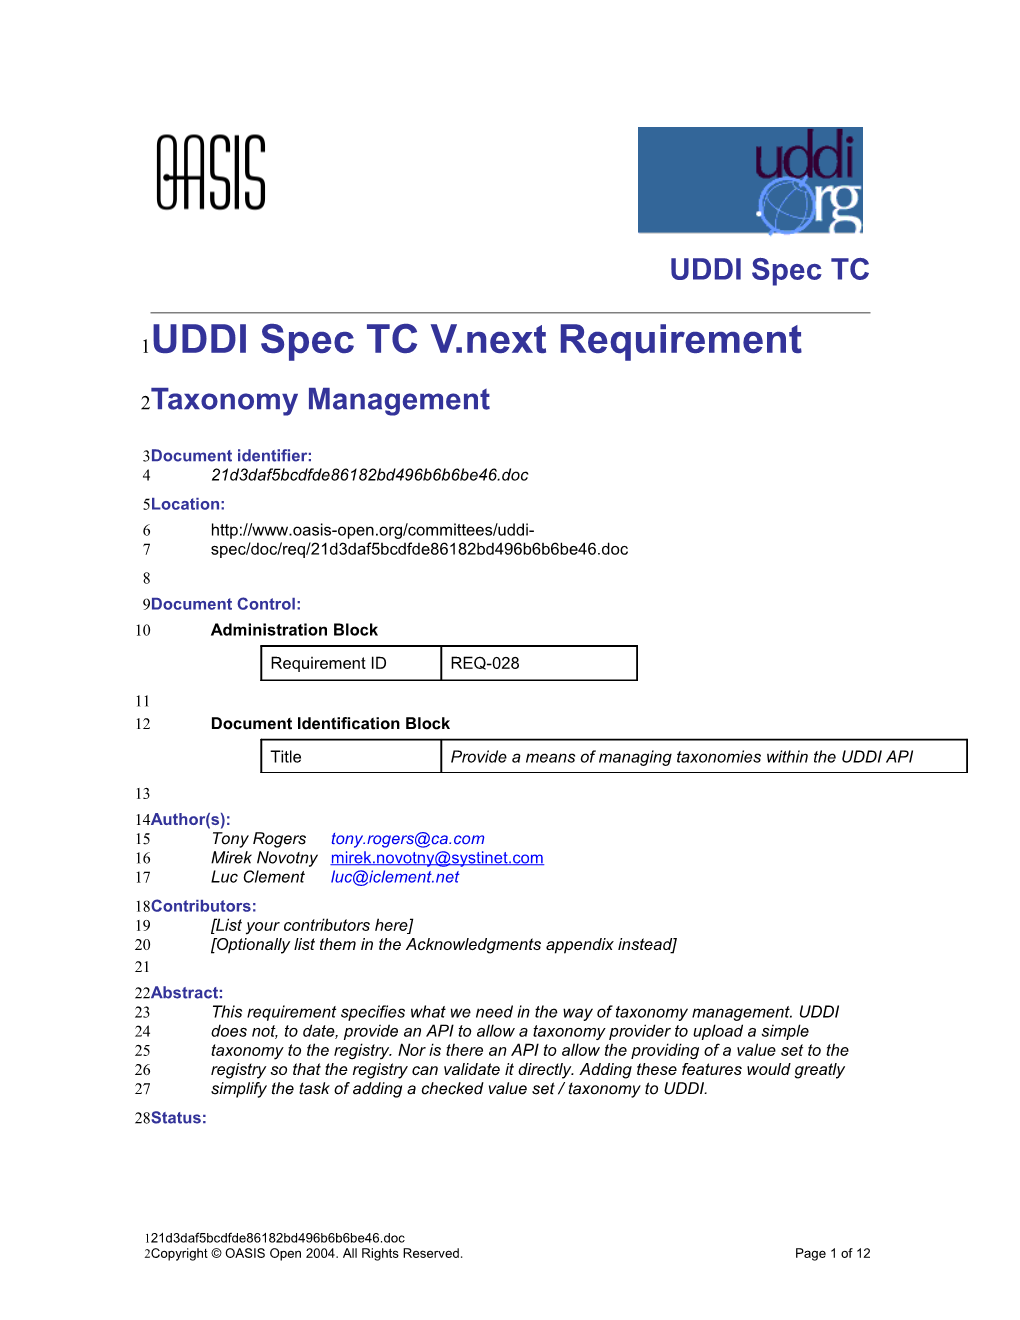 UDDI Spec TC V.Next Requirement